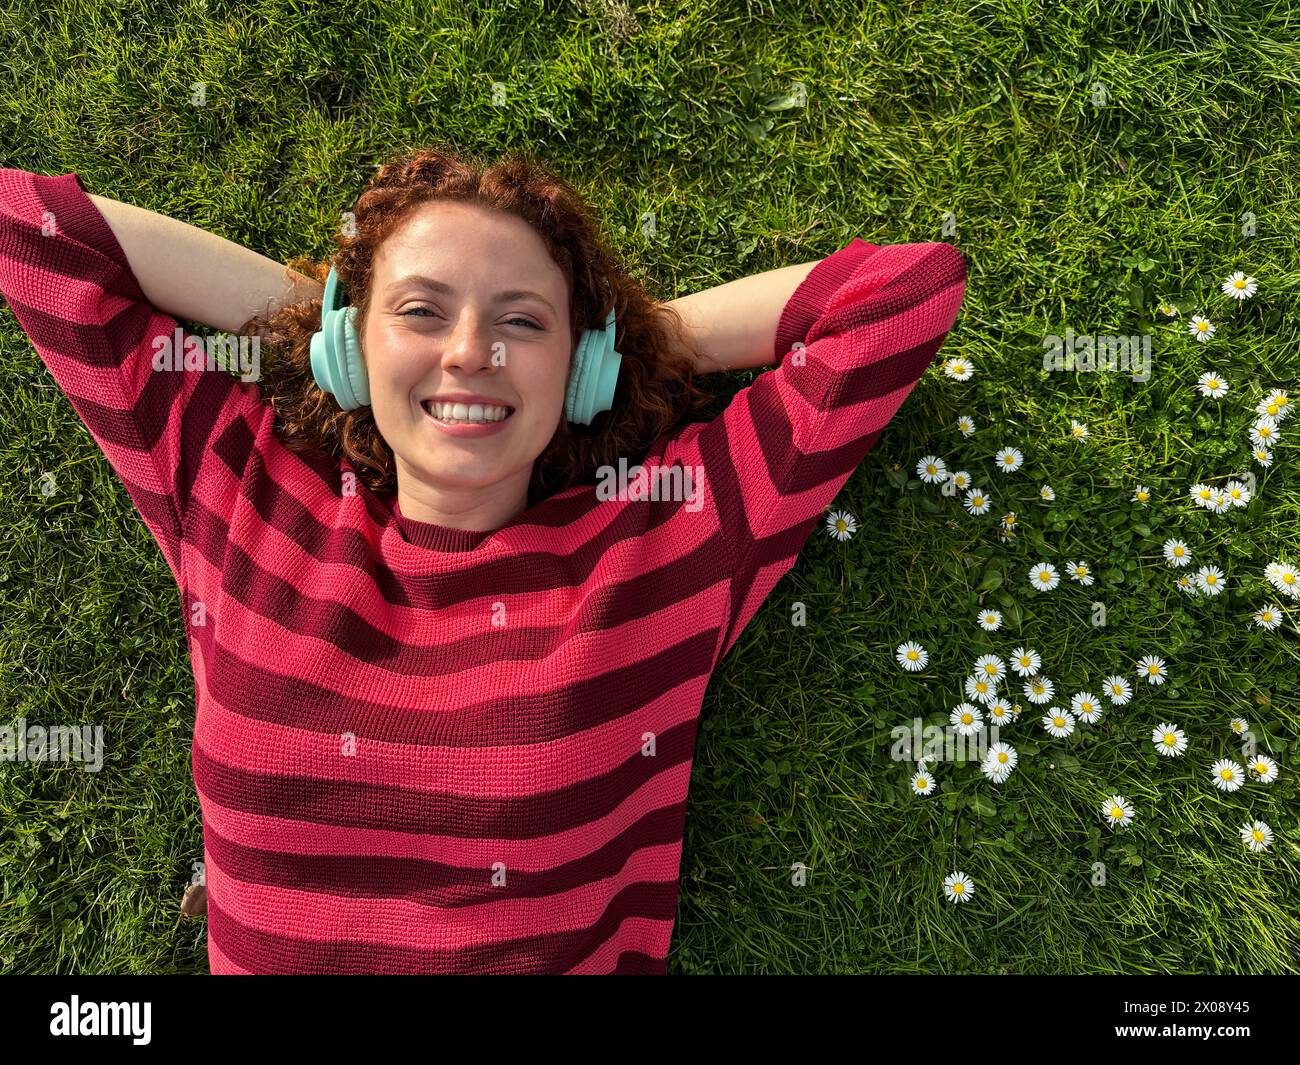 Una giovane e allegra rossa giace sull'erba con le braccia allungate, ascoltando la musica con le sue cuffie wireless, circondate da margherite Foto Stock